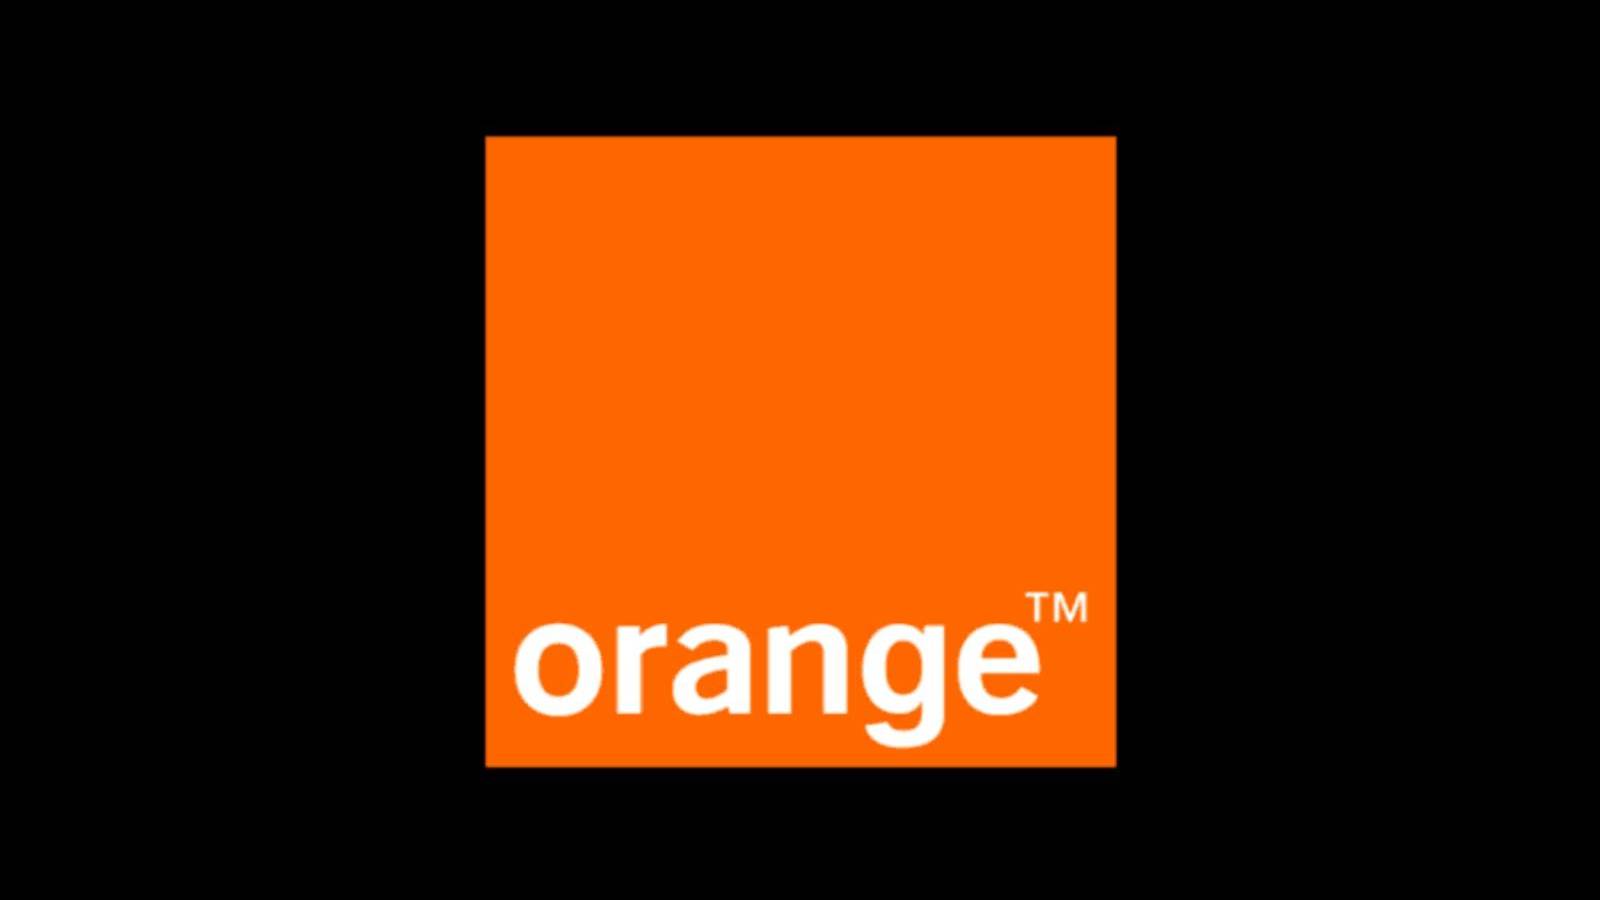 Oranges officiella meddelande, hur mycket pengar det ger GRATIS till rumänska kunder